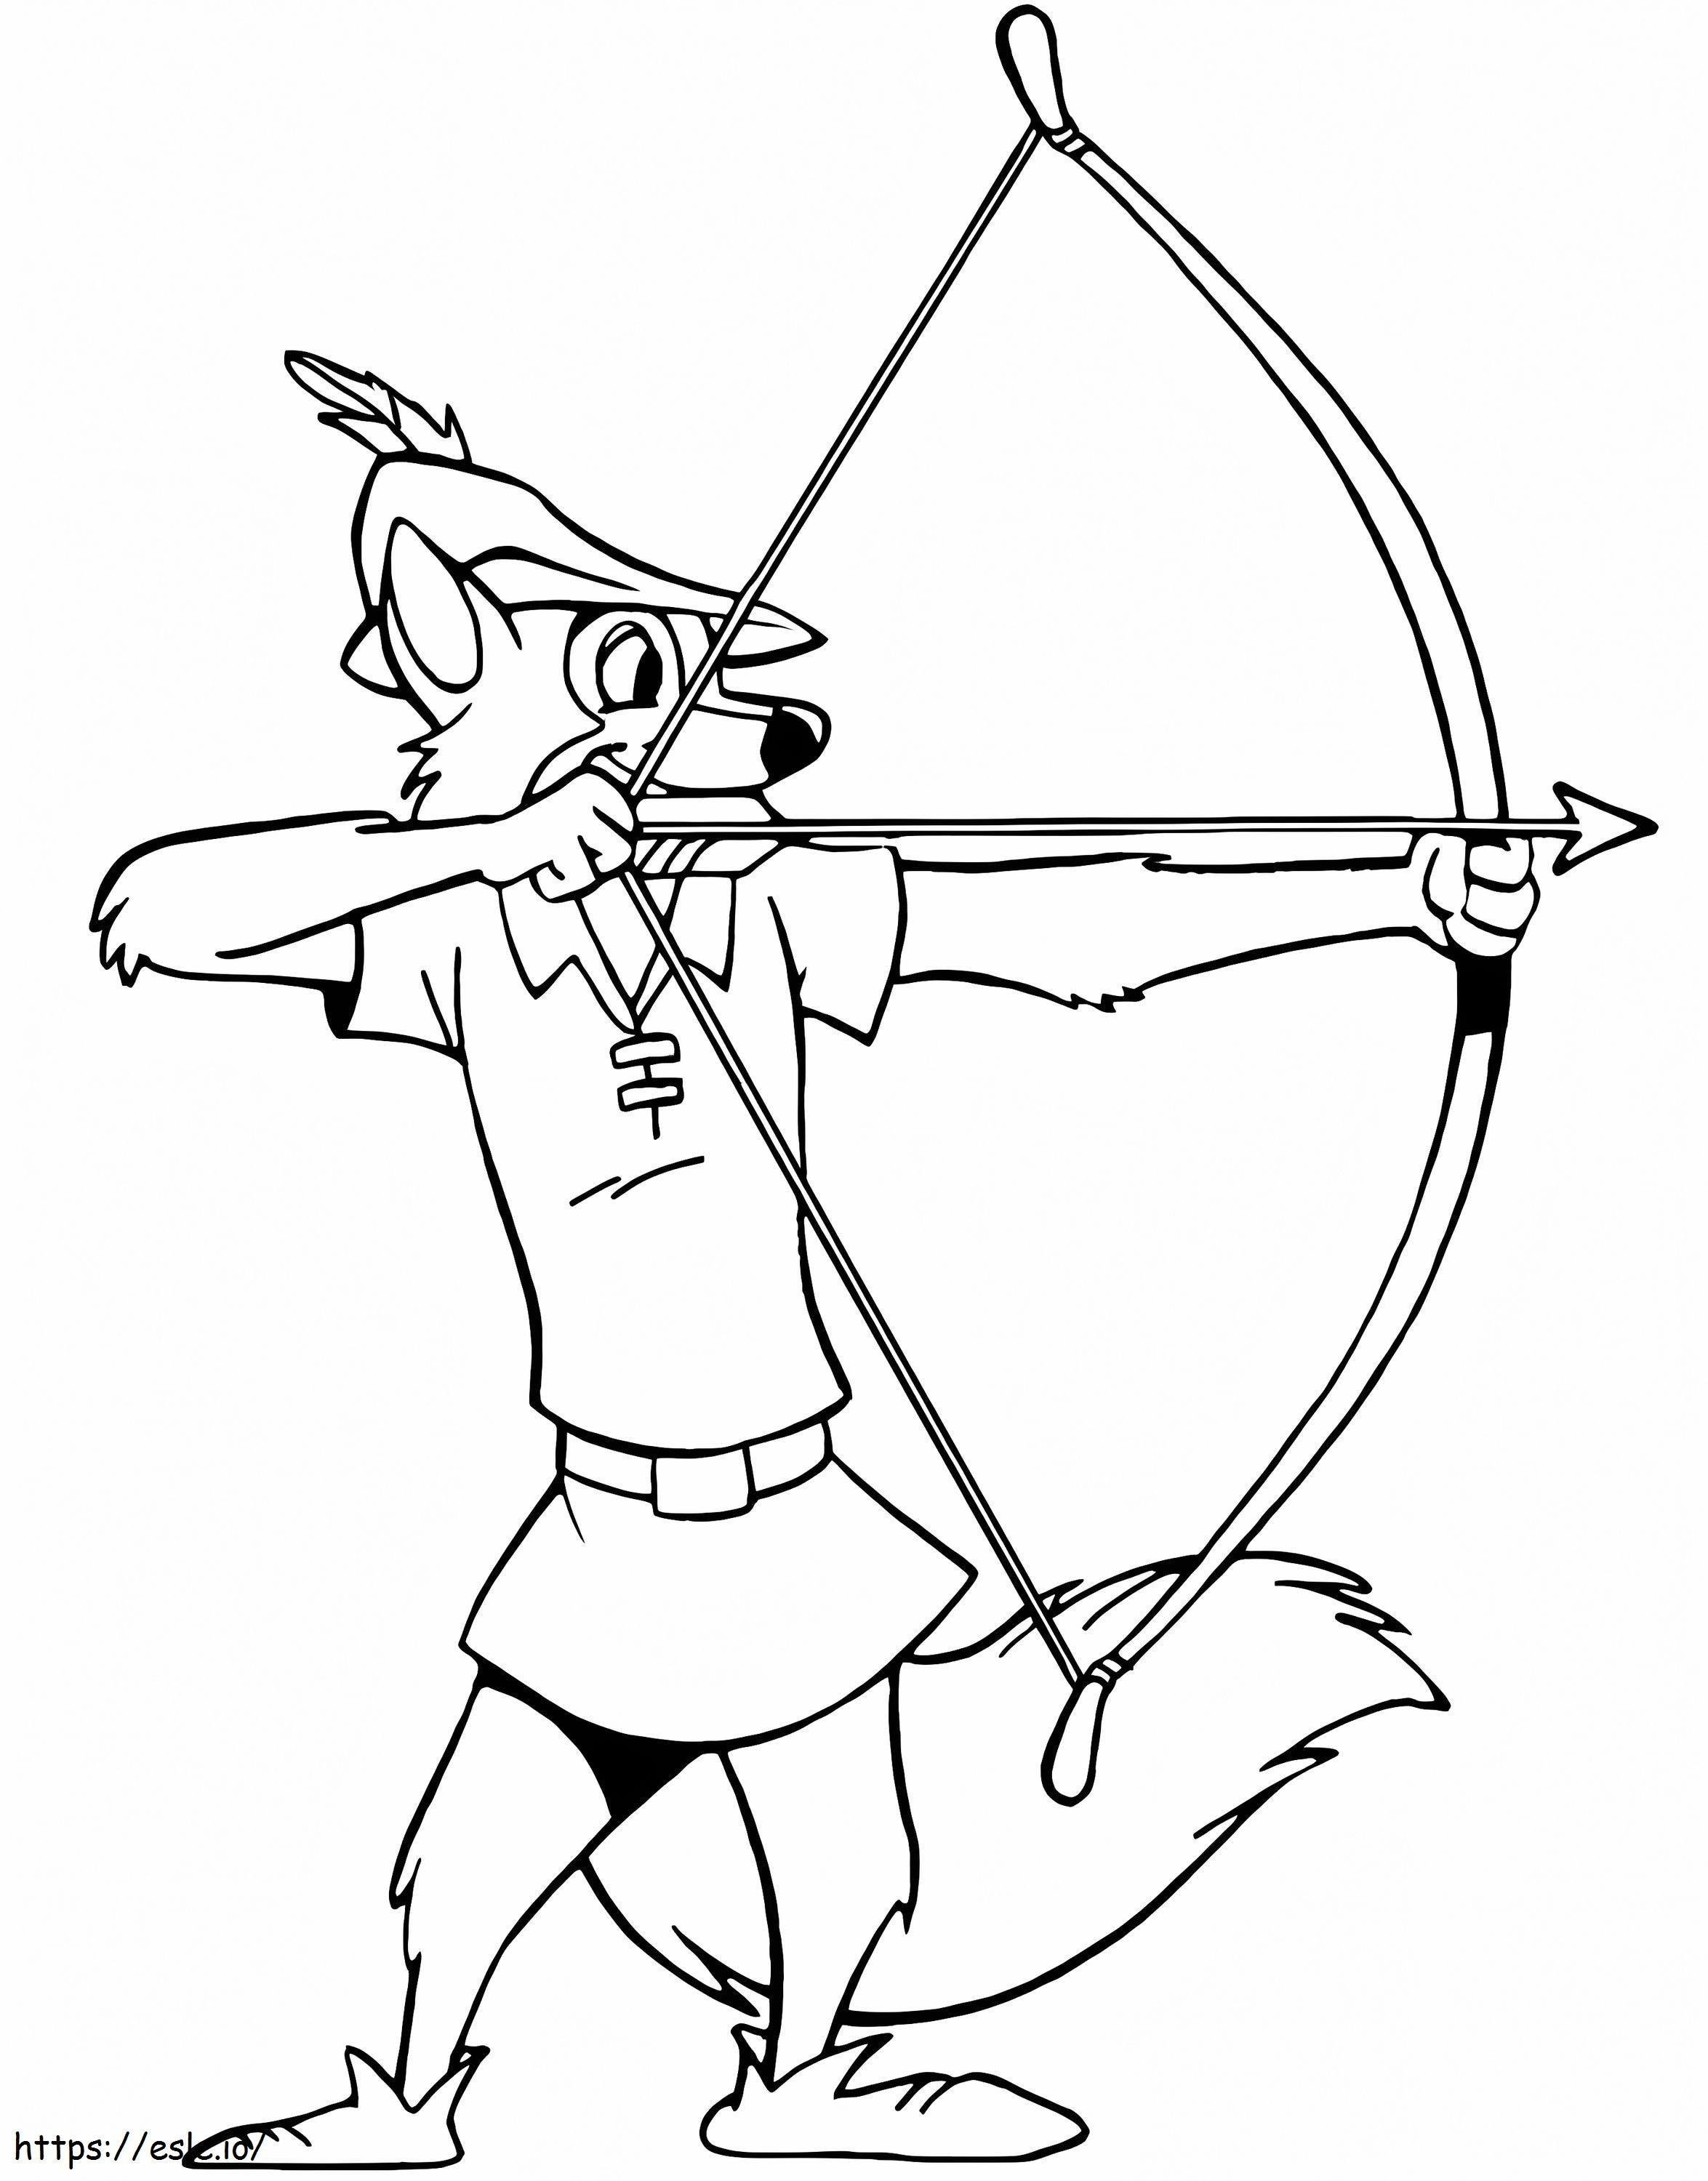 Robin Hood2 kleurplaat kleurplaat